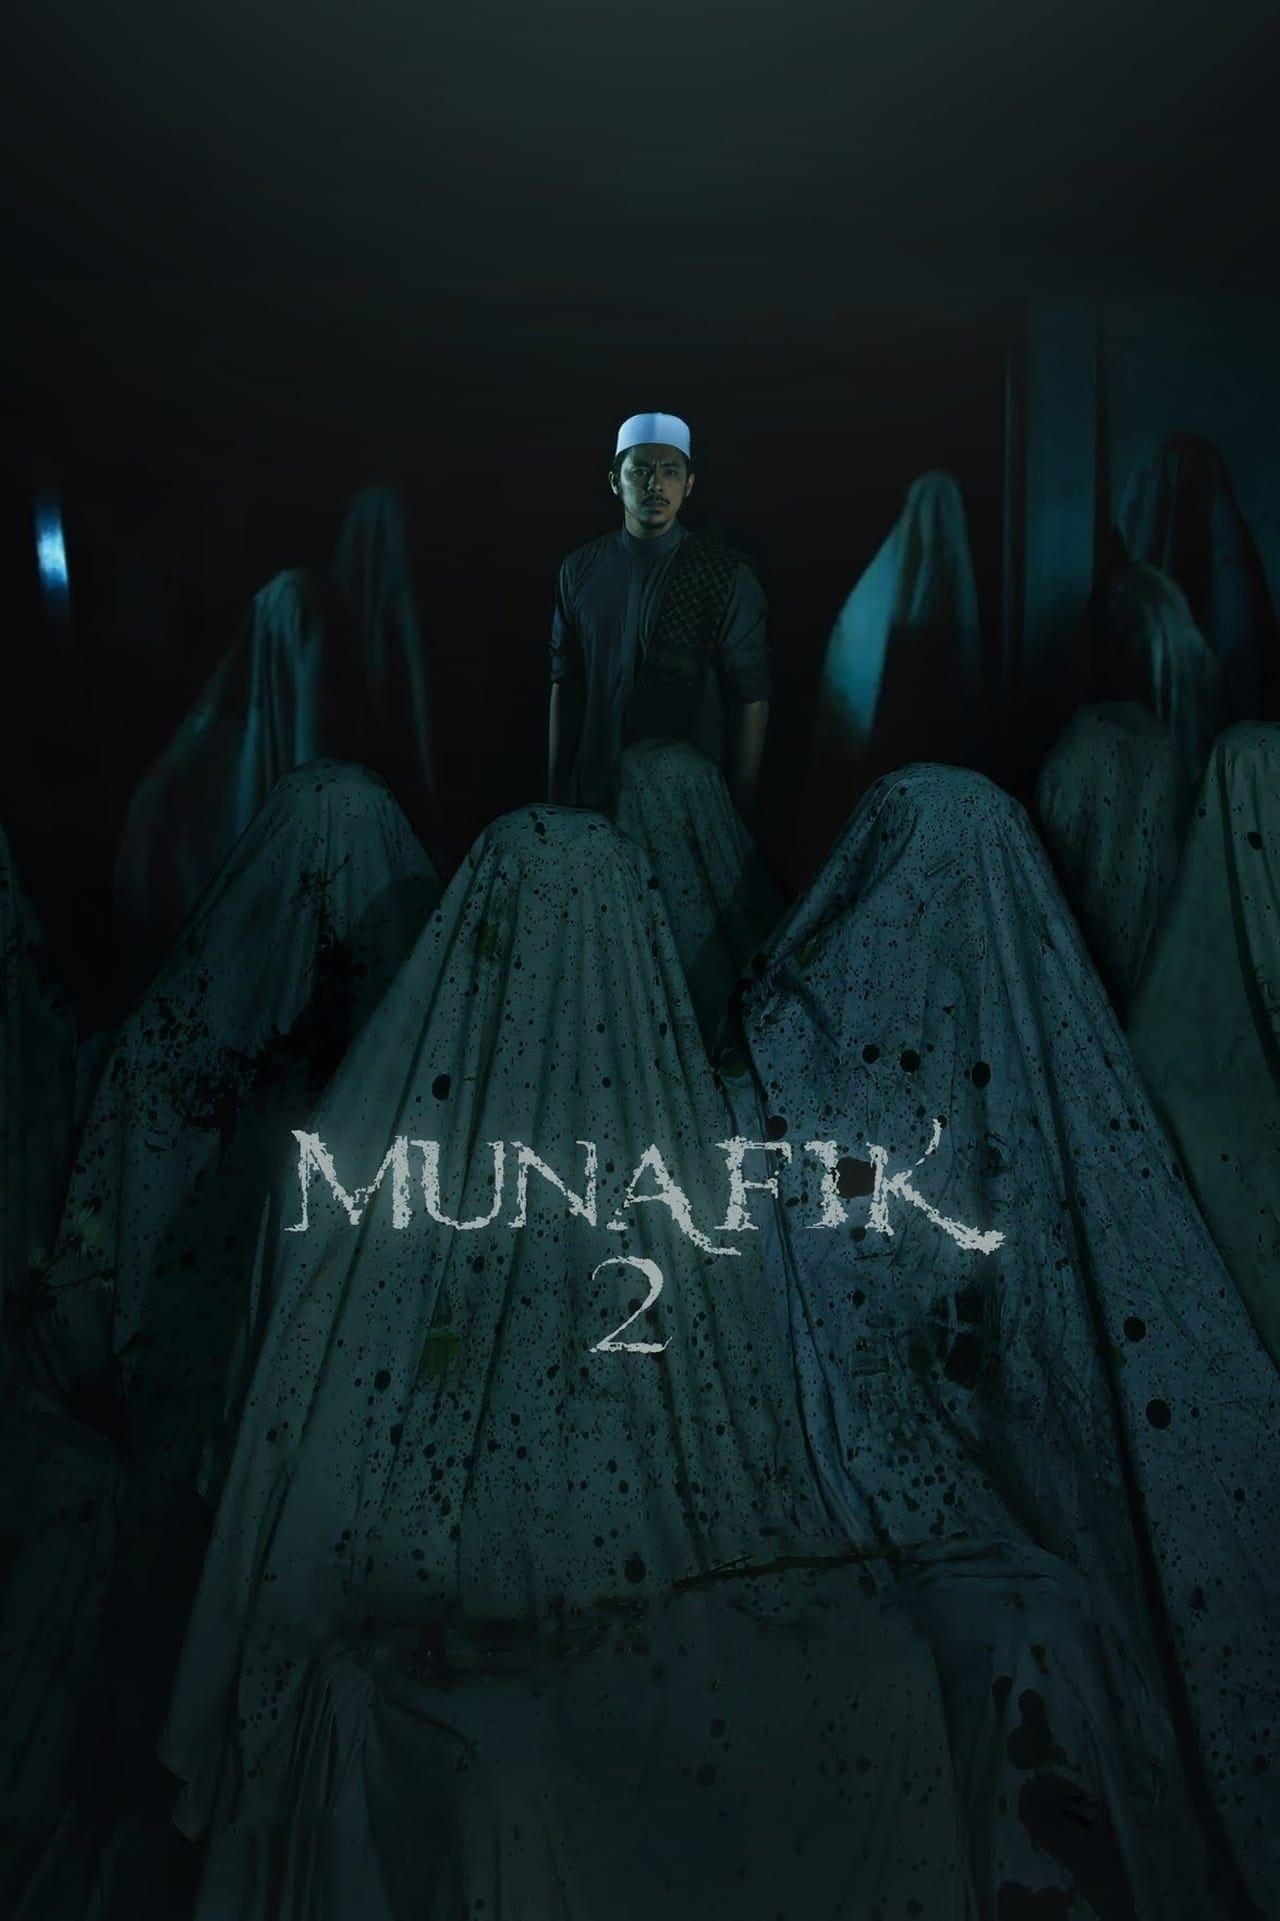 Munafik 2 poster